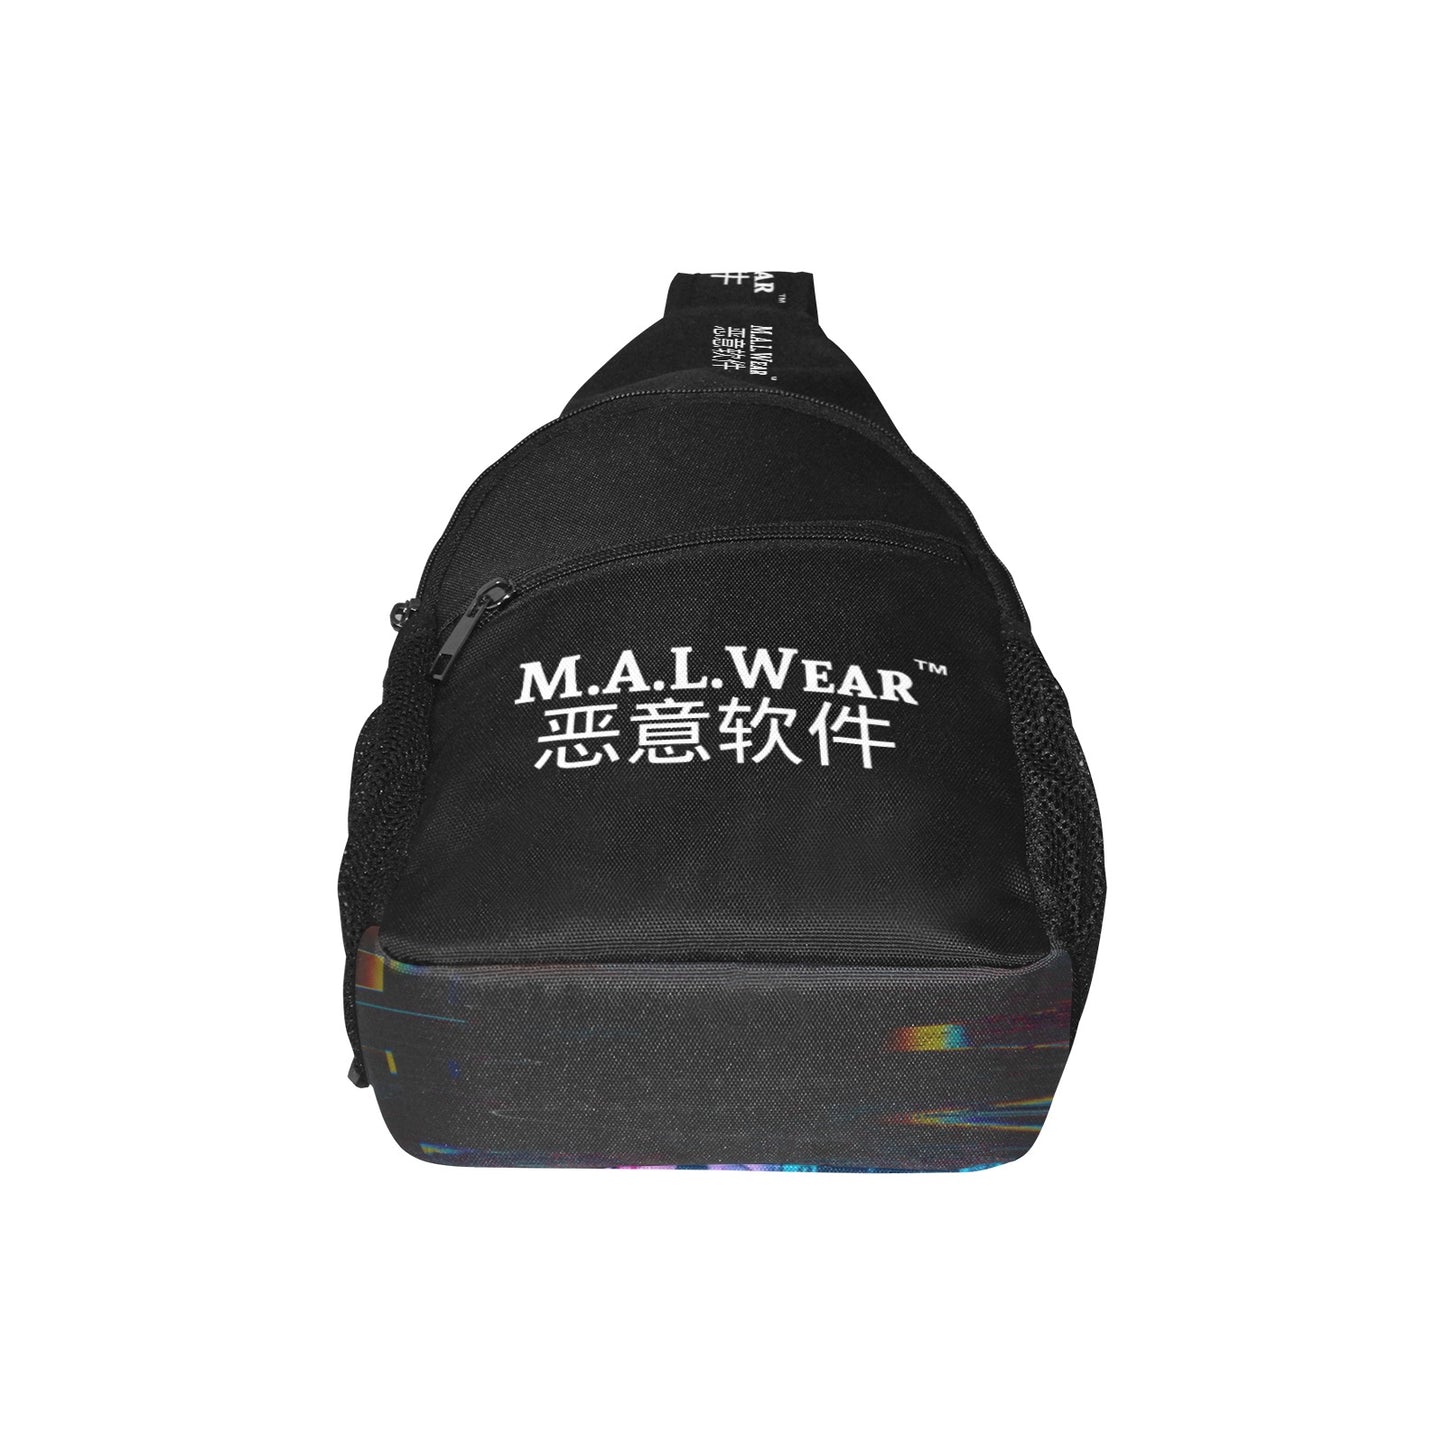 MALWear Tech Chest Pack